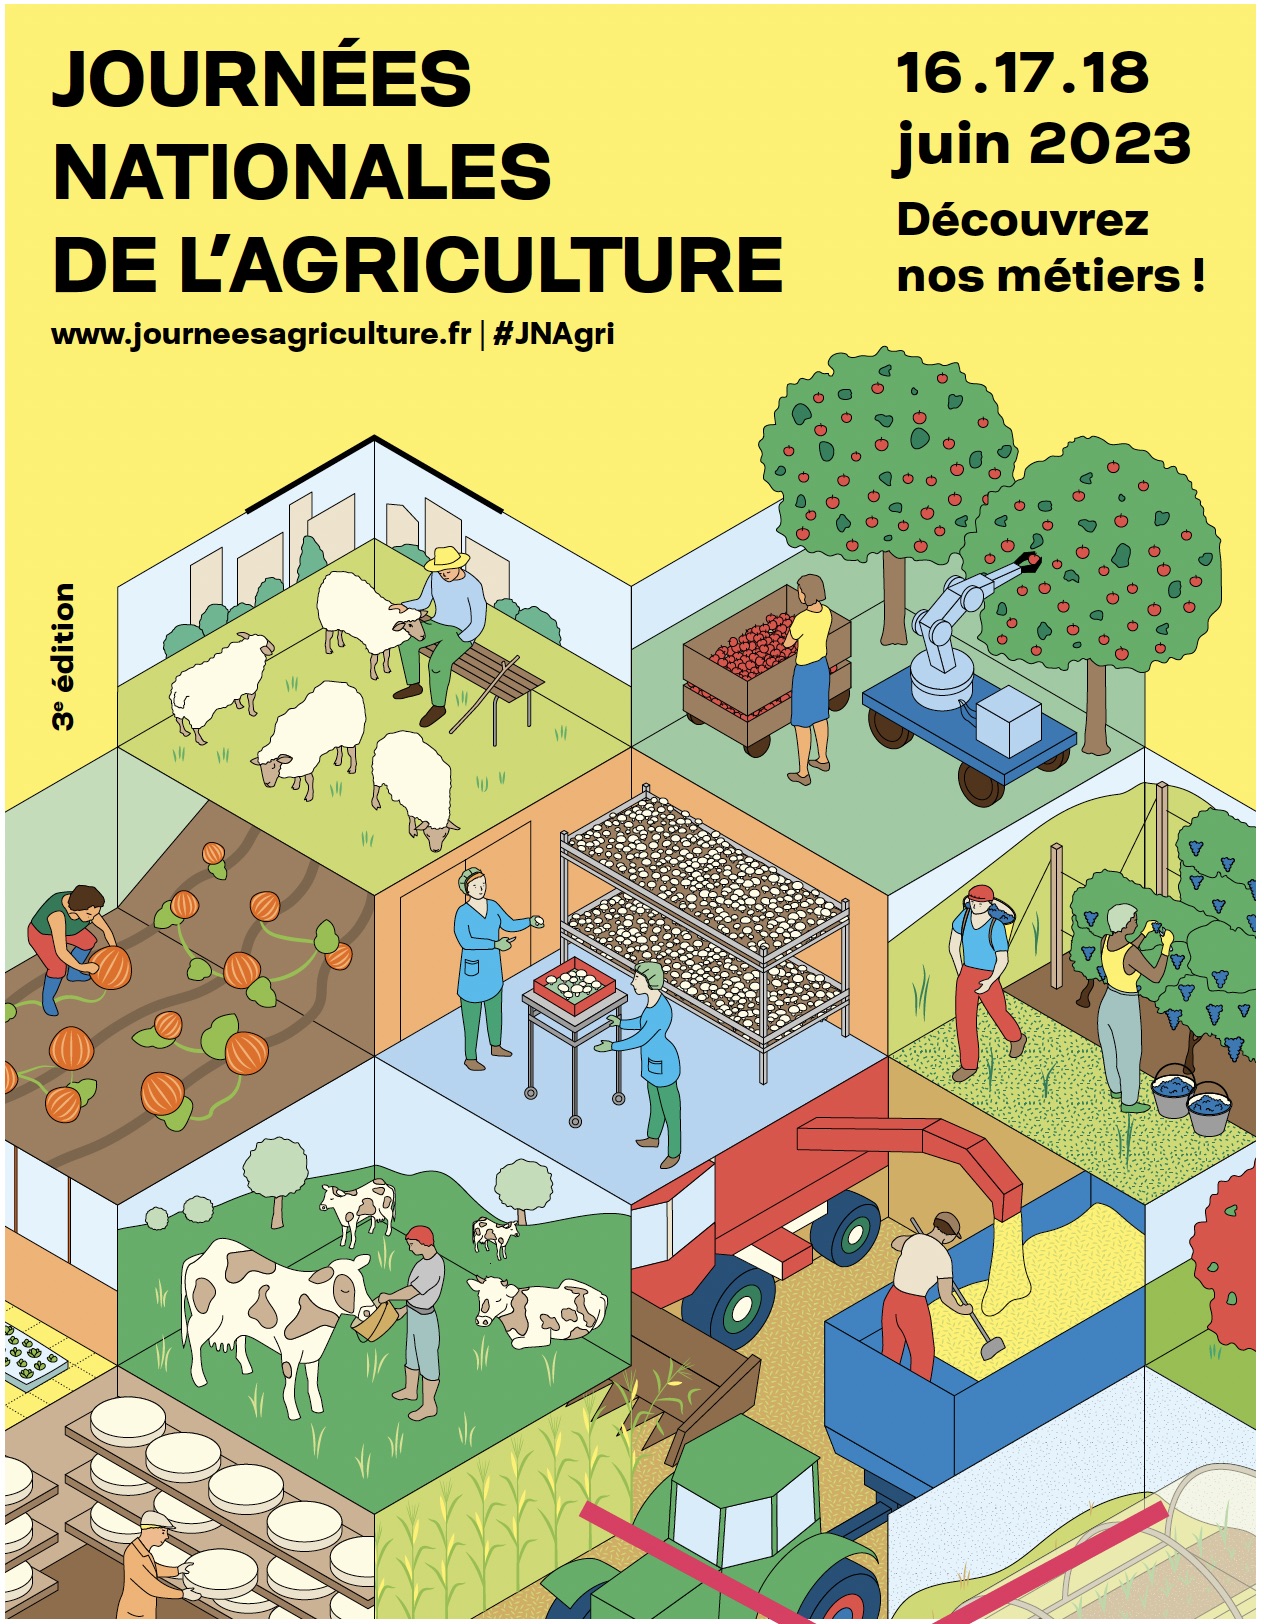 La 3e édition des Journées nationales de l'Agriculture